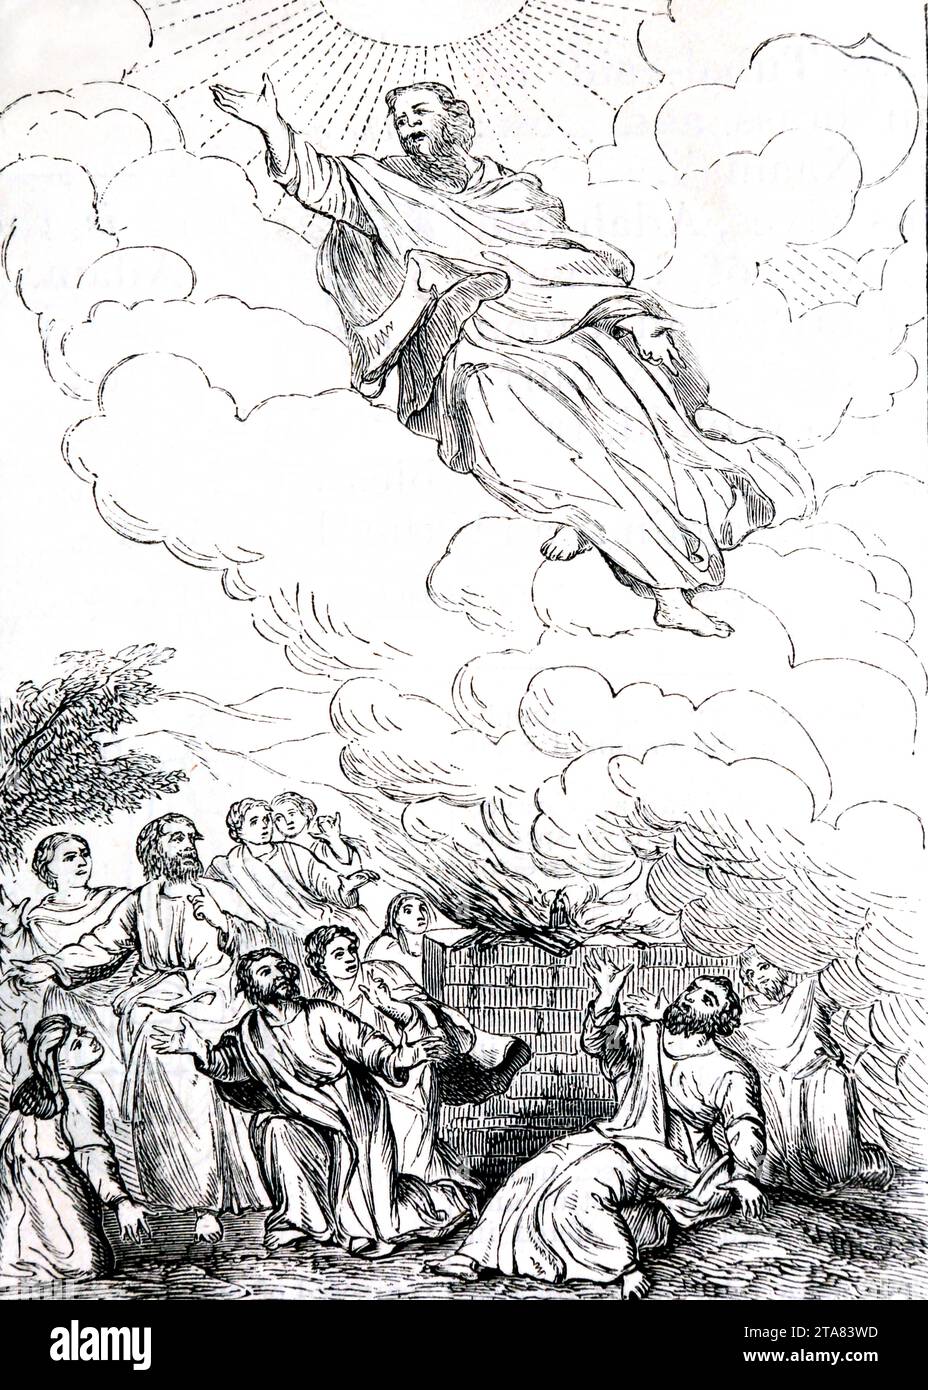 Ilustración de la Traducción de Enoc por Le Brun (Génesis) Enoc llevado al cielo de la Biblia Familiar Ilustrada Foto de stock